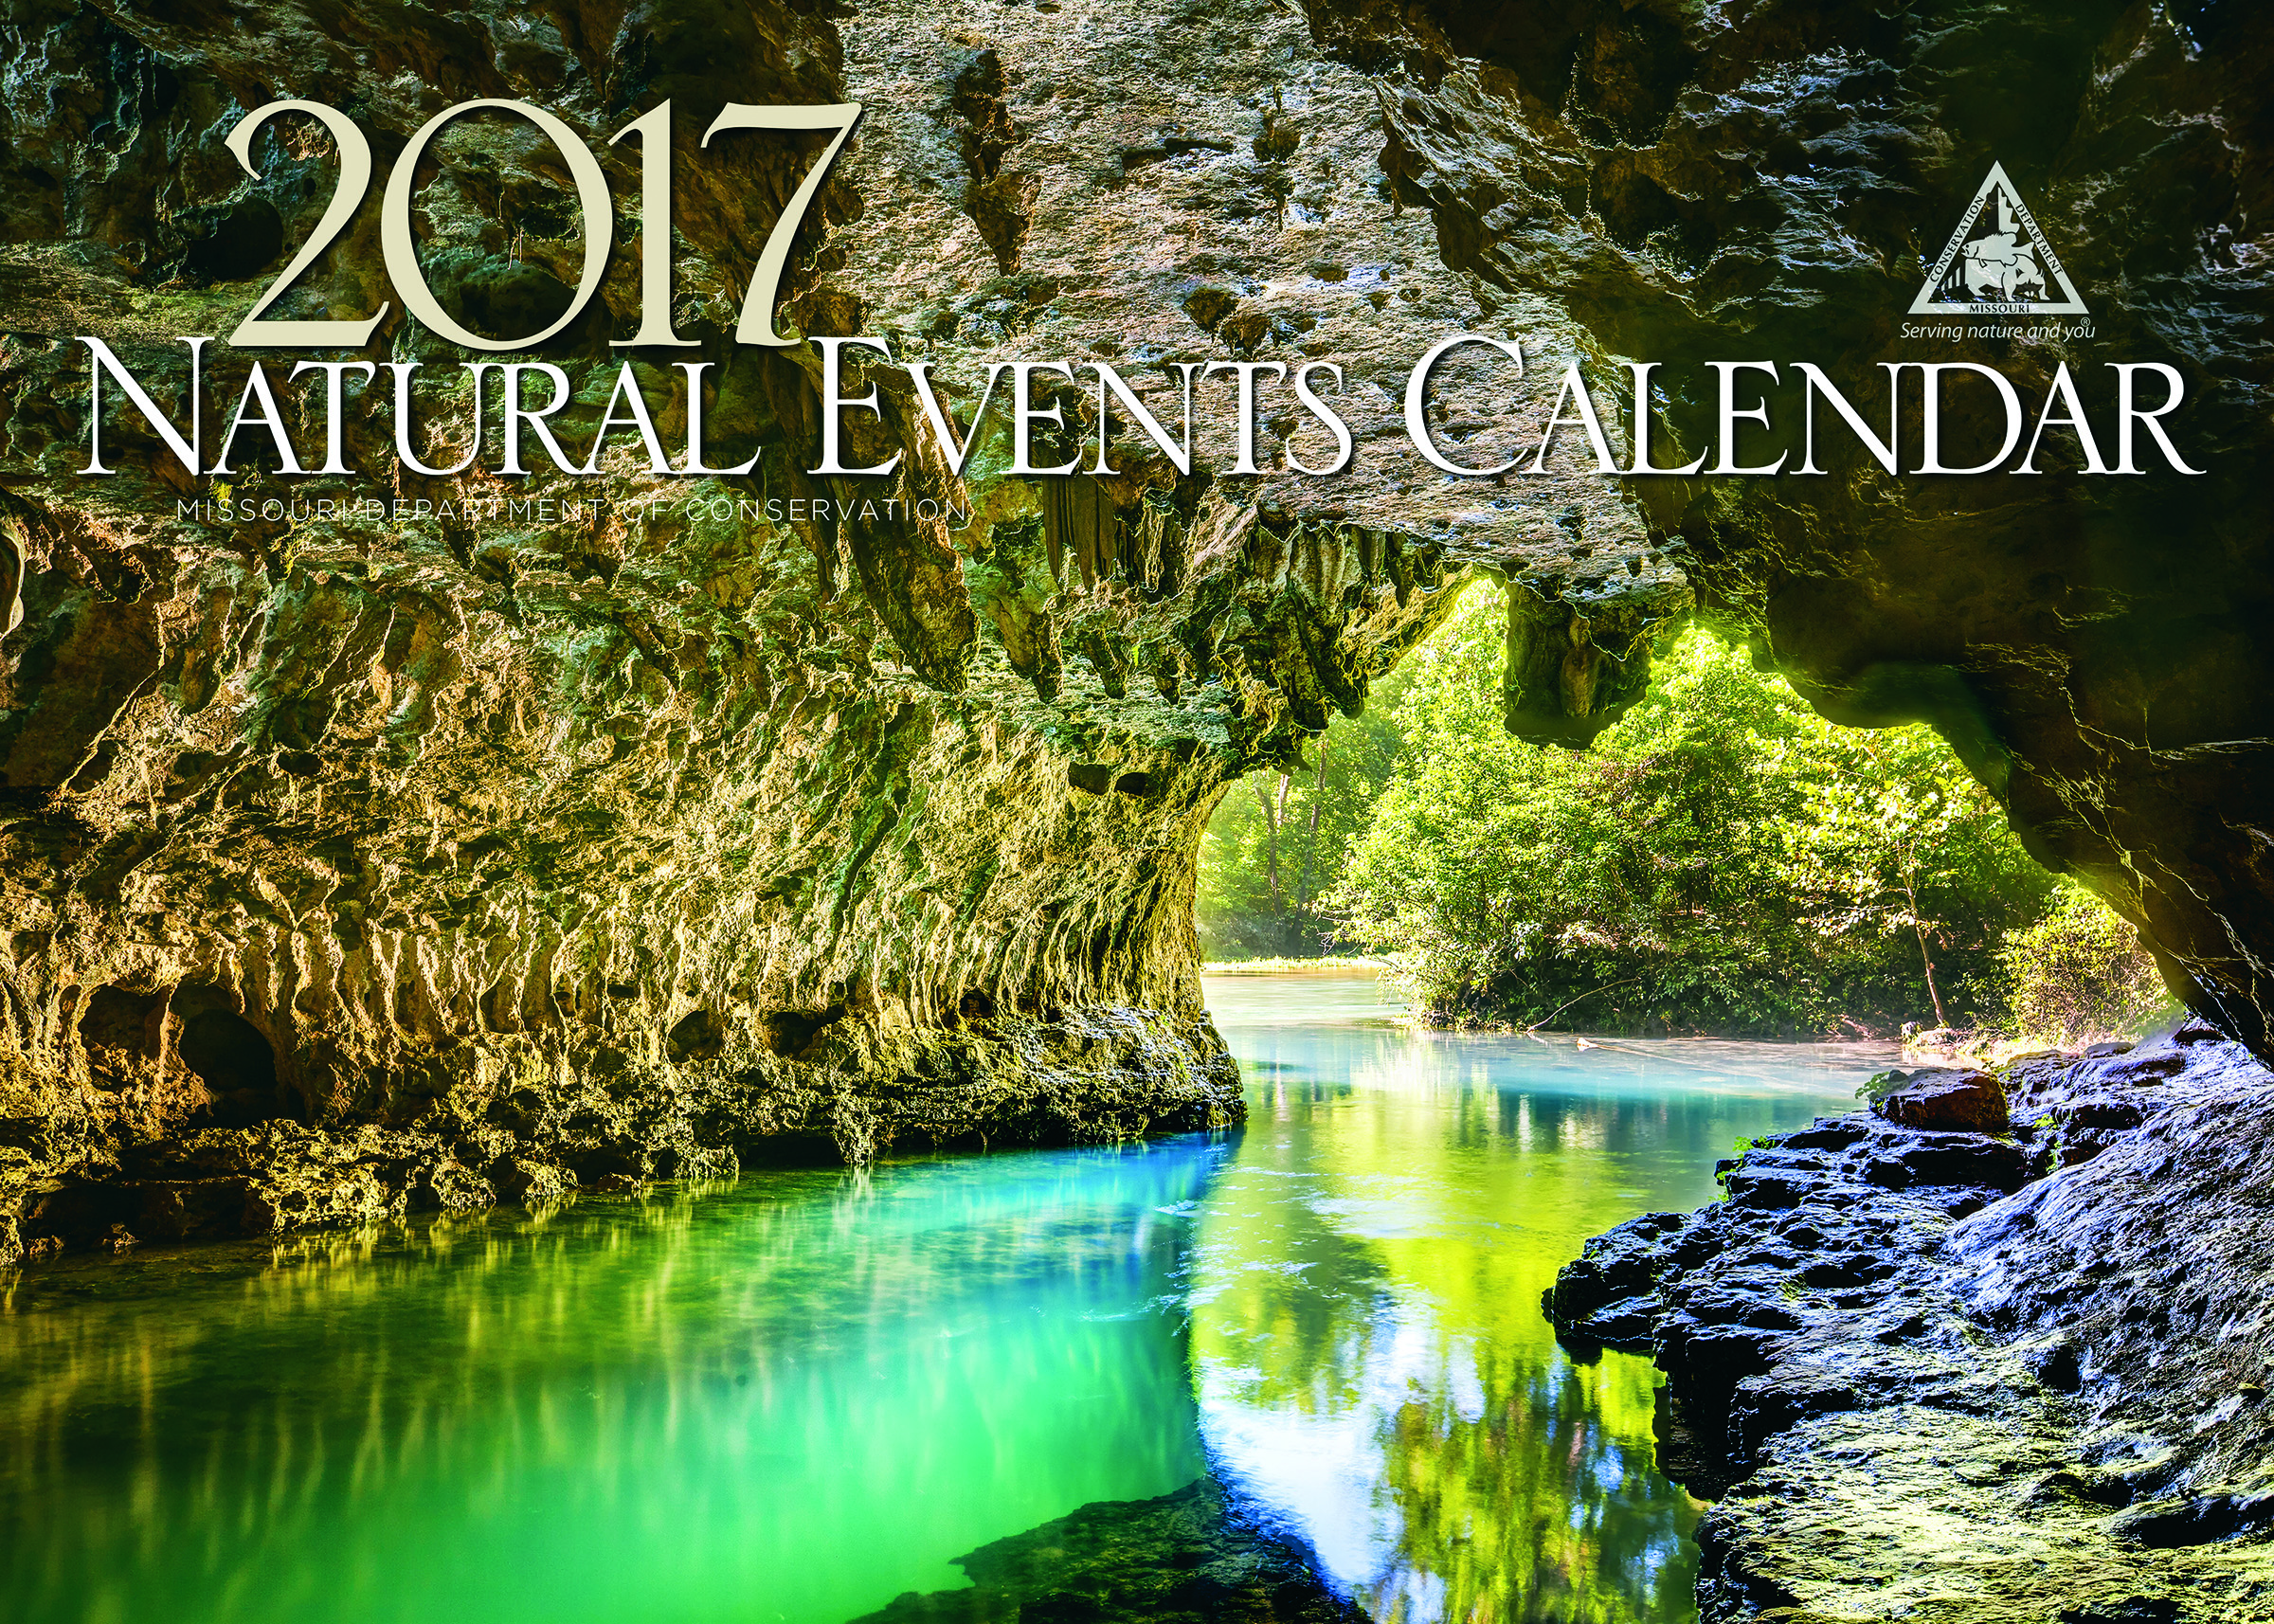 2017 Natural Events Calendar